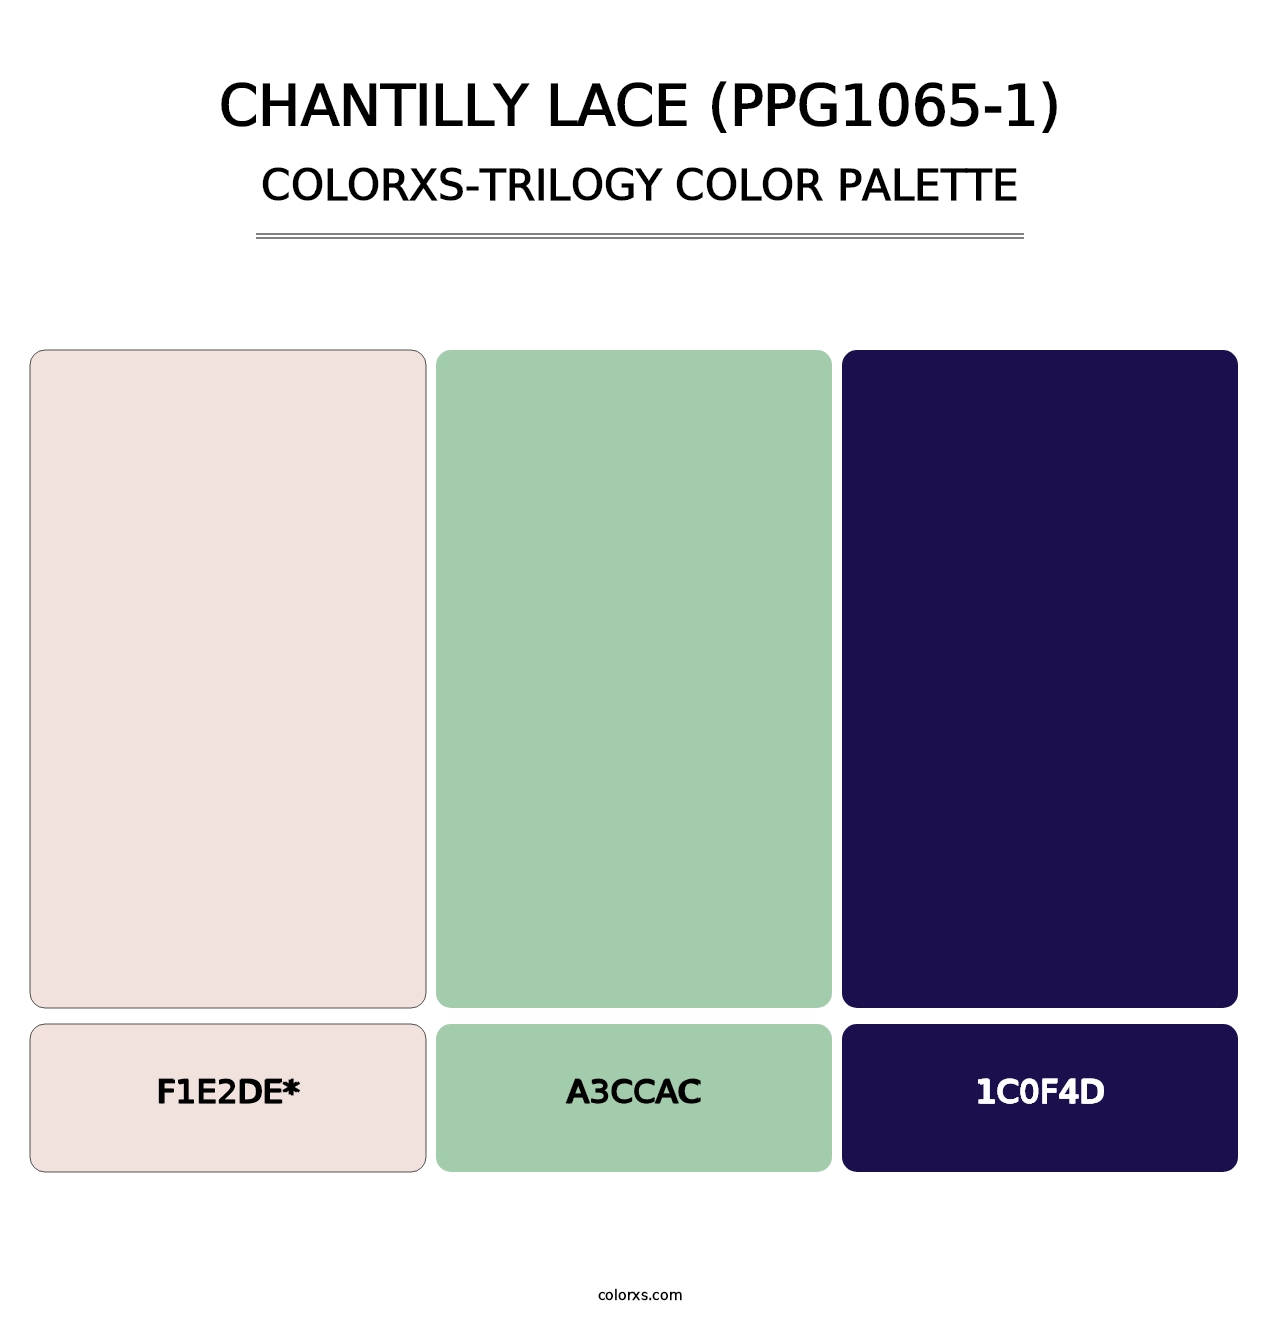 Chantilly Lace (PPG1065-1) - Colorxs Trilogy Palette